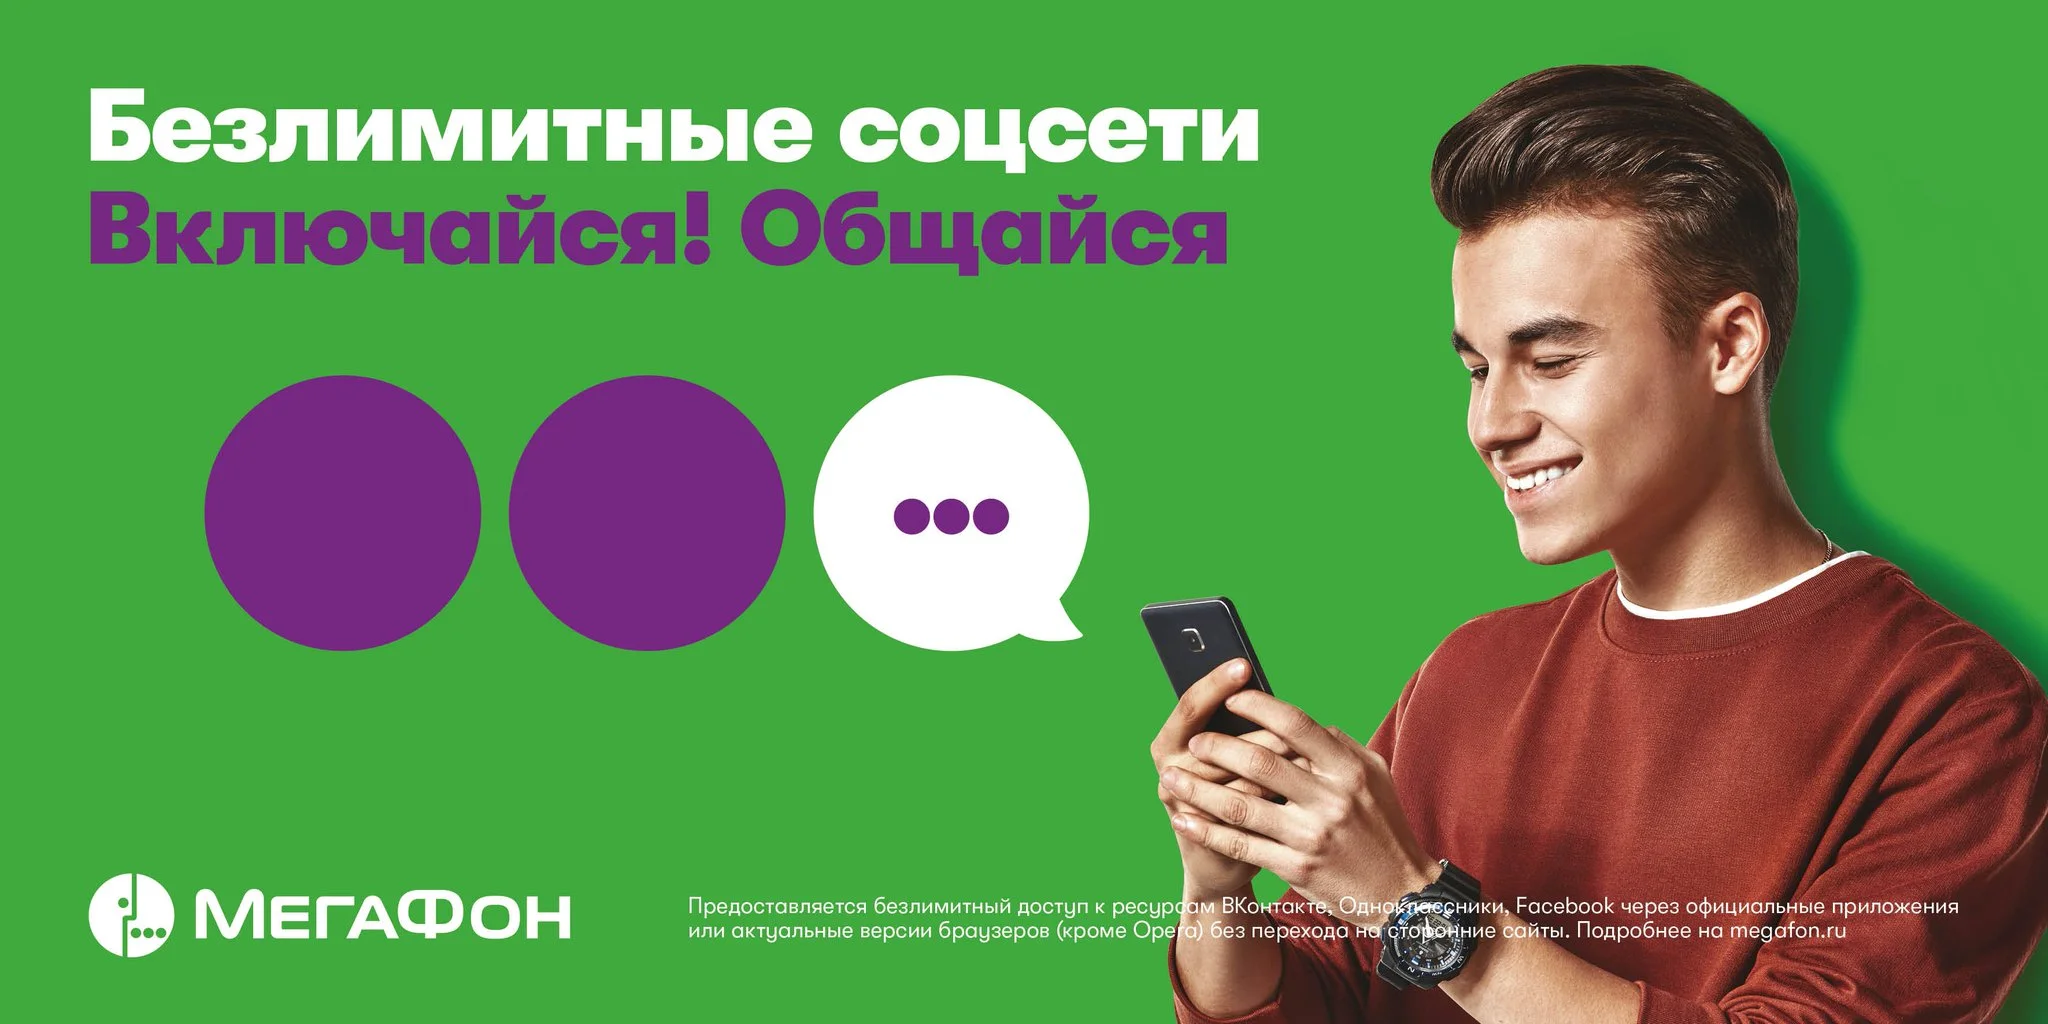 Реклама компании связи «Мегафон» 